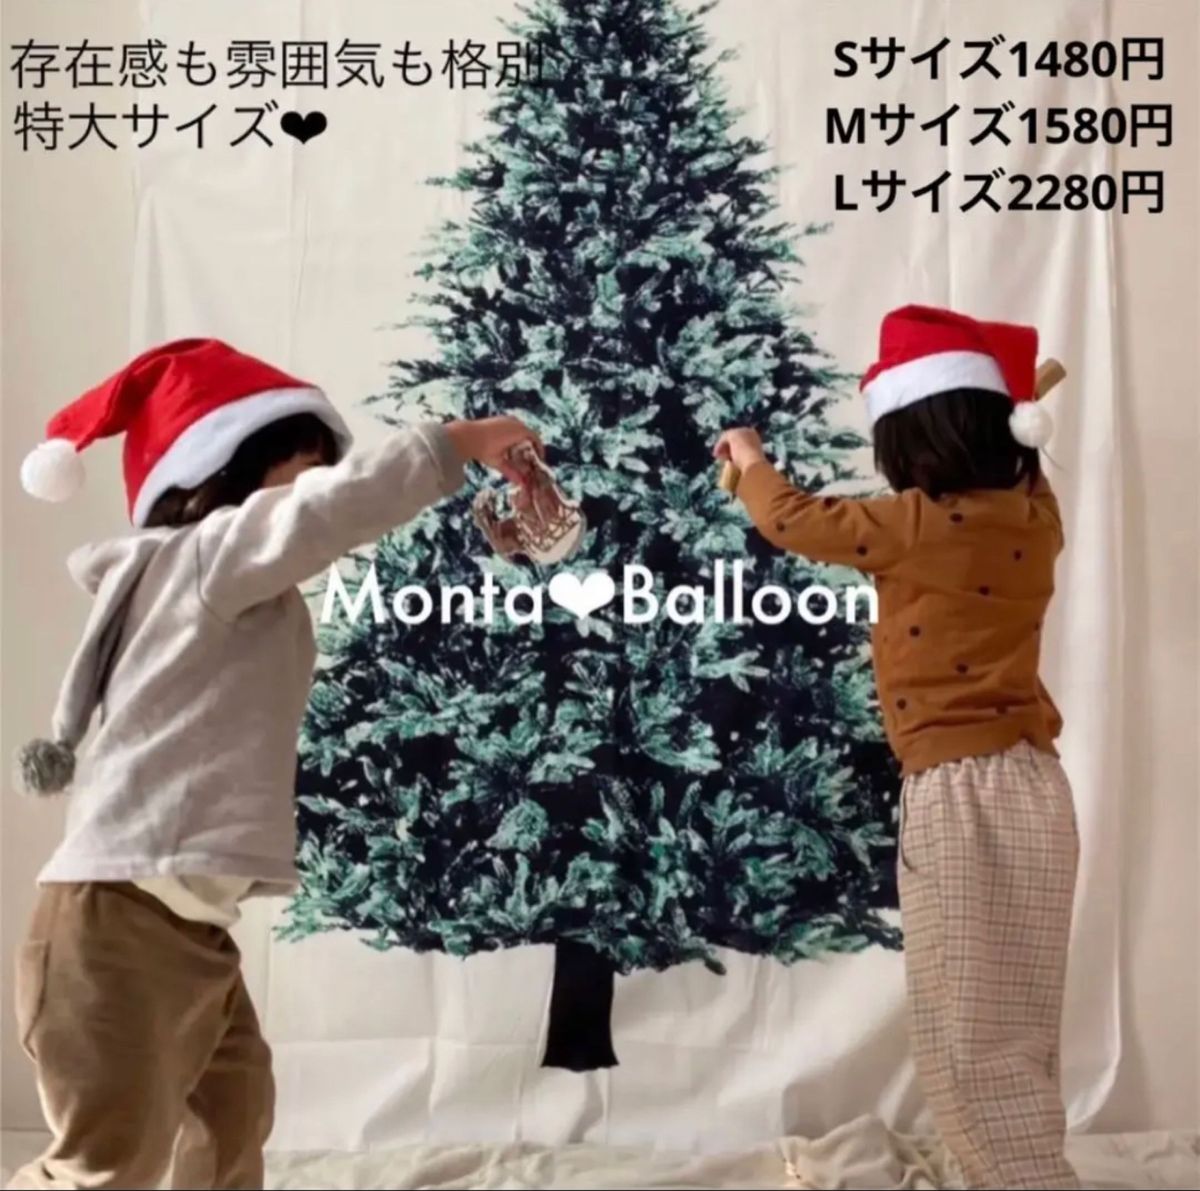 クリスマス 豪華セット ツリー クリスマスツリー パーティー用品 冬 飾り付け 大人も子供も ガーランド バルーン セット